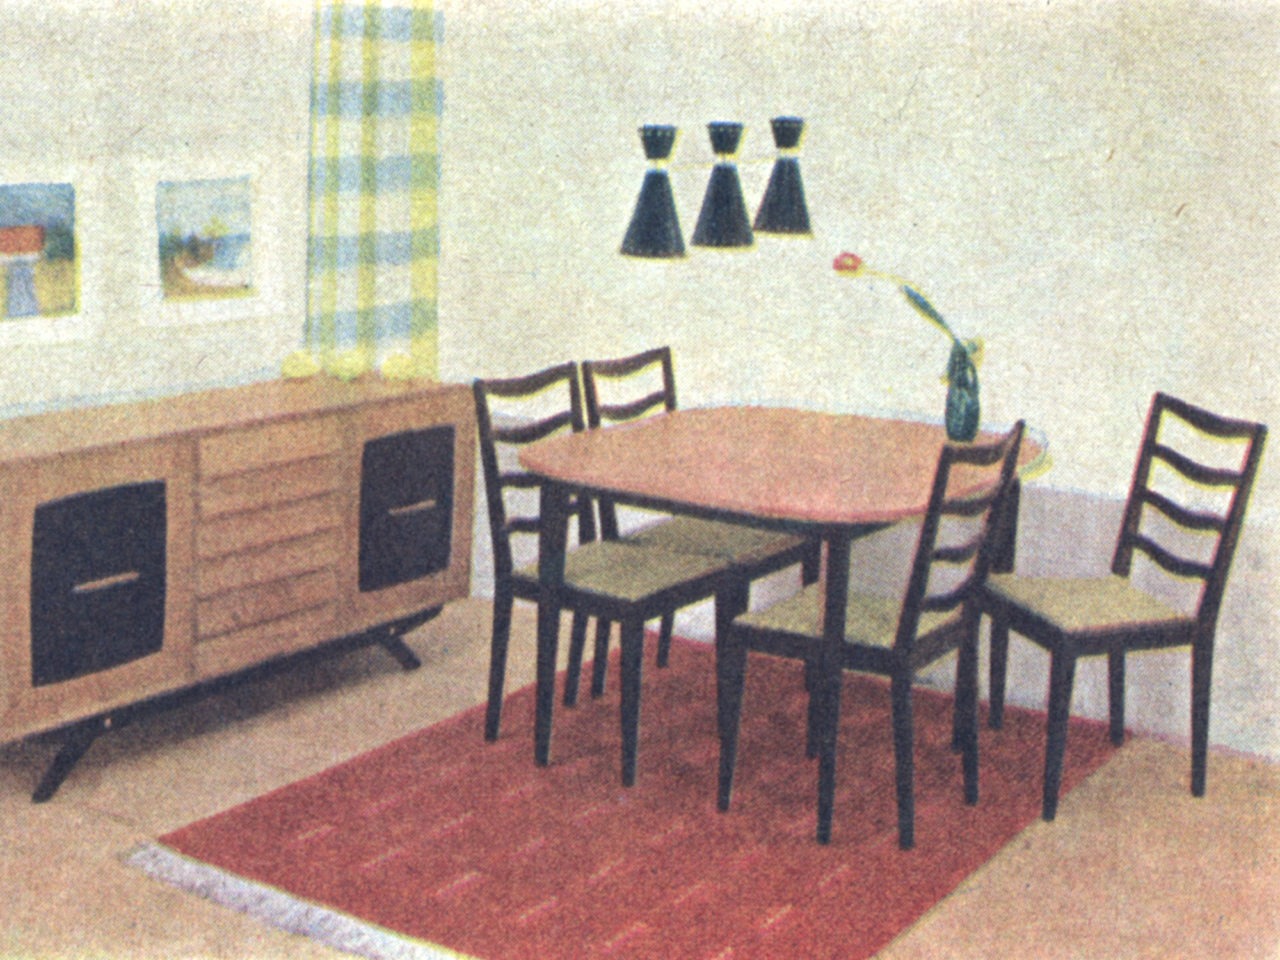 Mesa de comedor y cuatro sillas, modelo FORUM, y alfombra roja. Junto a la pared, un aparador de patas inclinadas.